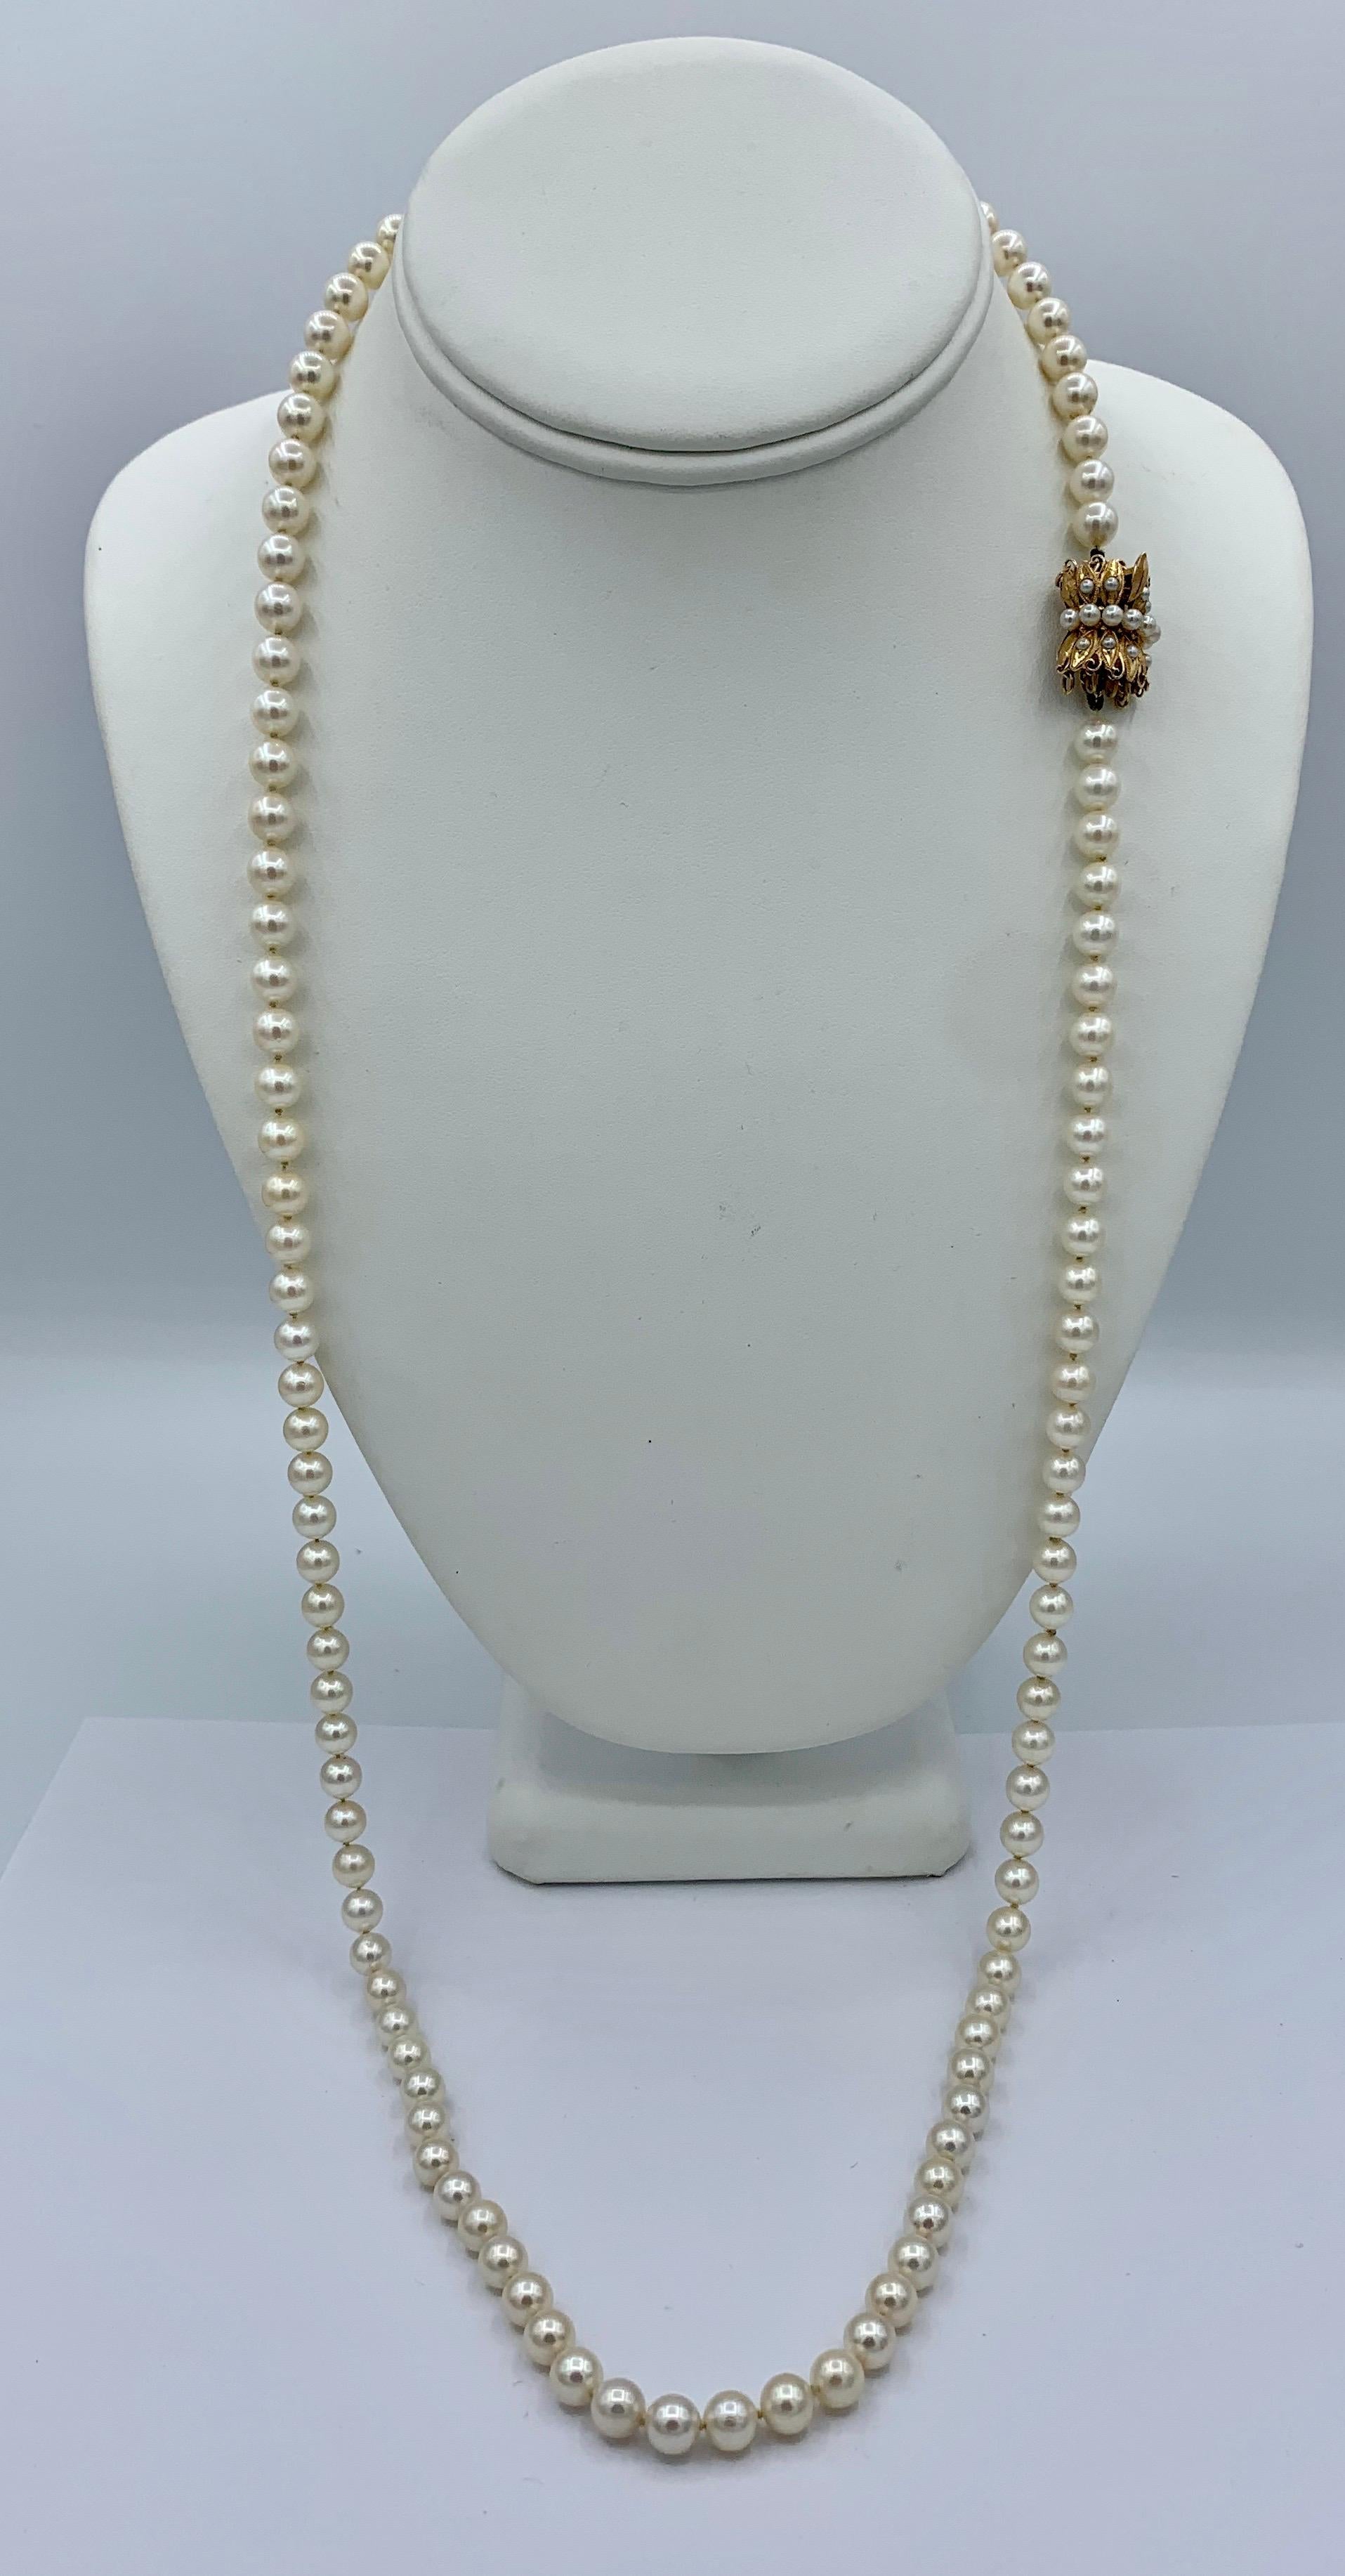 Dies ist eine prächtige 33,5 Zoll lange Zuchtperlenkette mit 6,5 mm weißen Perlen von großer Schönheit aus dem Nachlass von Botschafter und Frau Evan G. Galbraith.  Die atemberaubende Perlenkette hat eine fabelhafte Länge.  Die Perlen haben einen